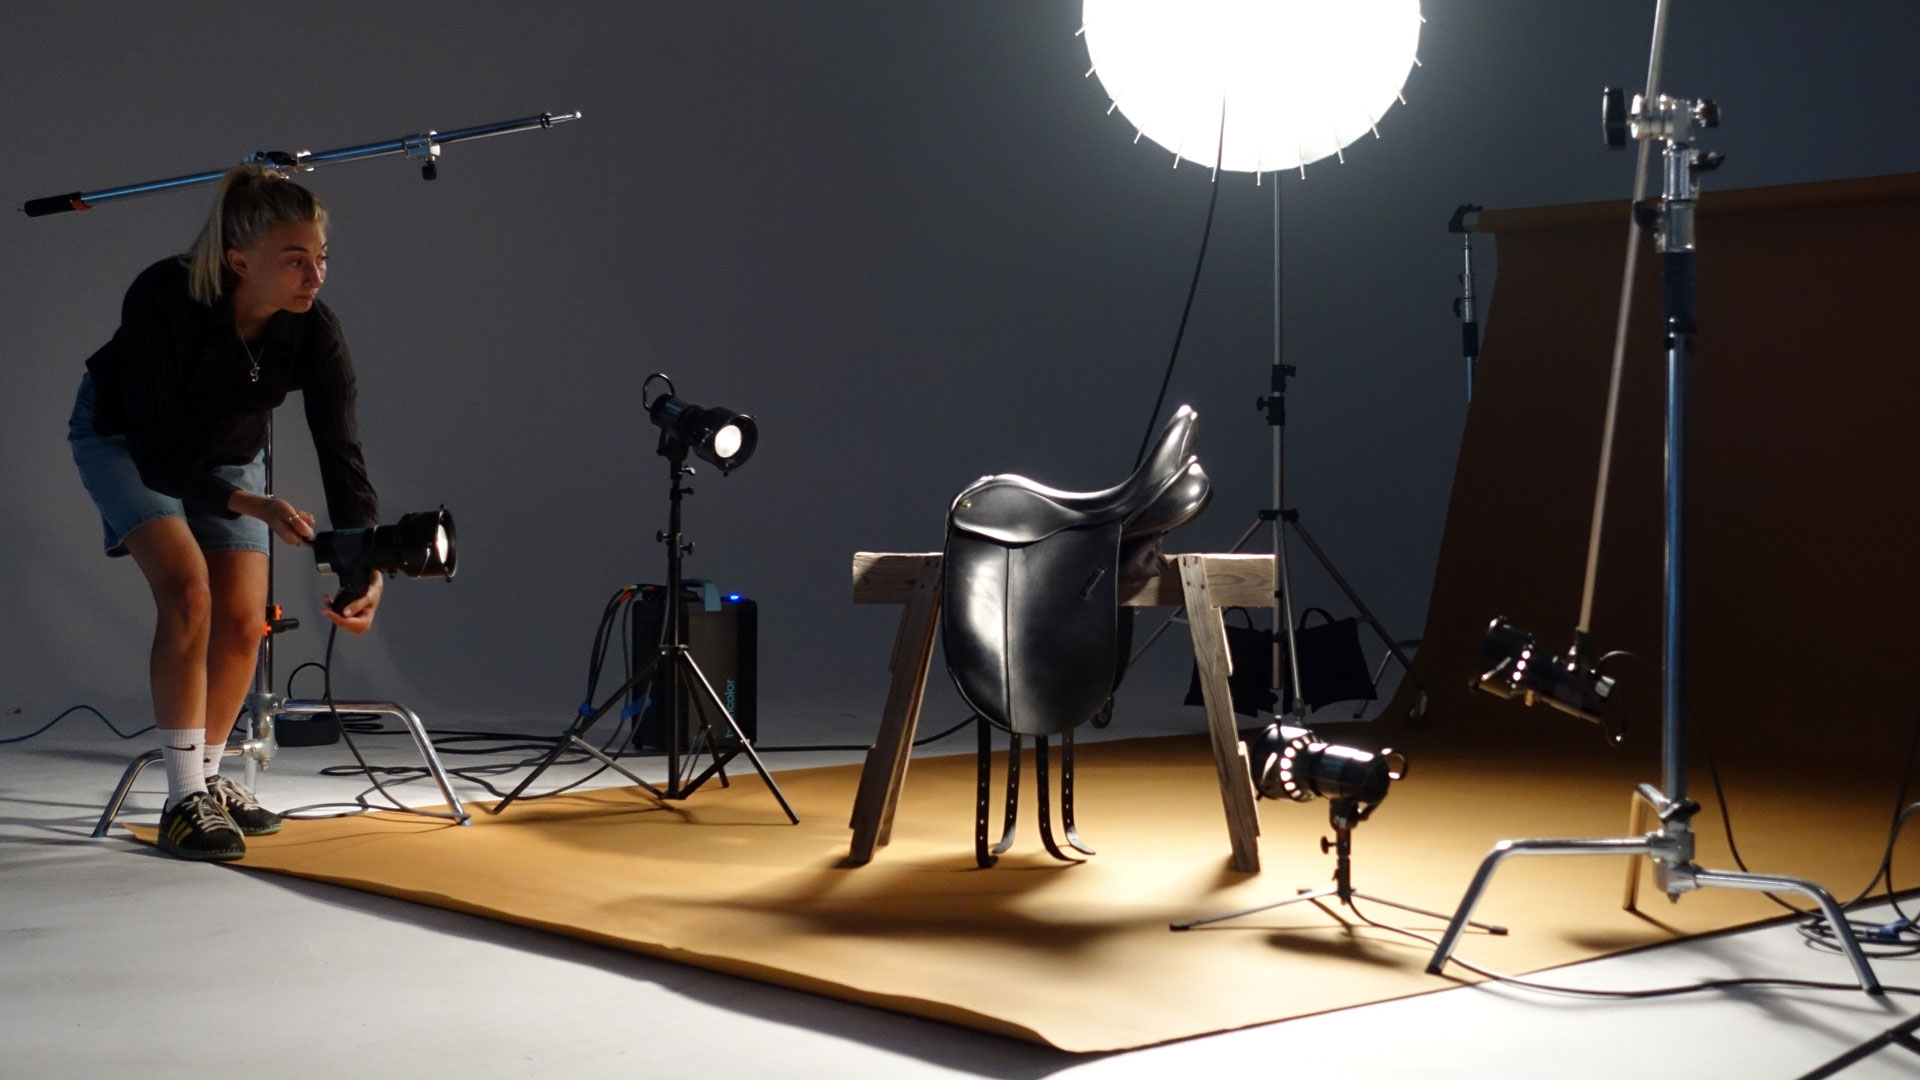 Product photography lighting setup for a saddle shoot